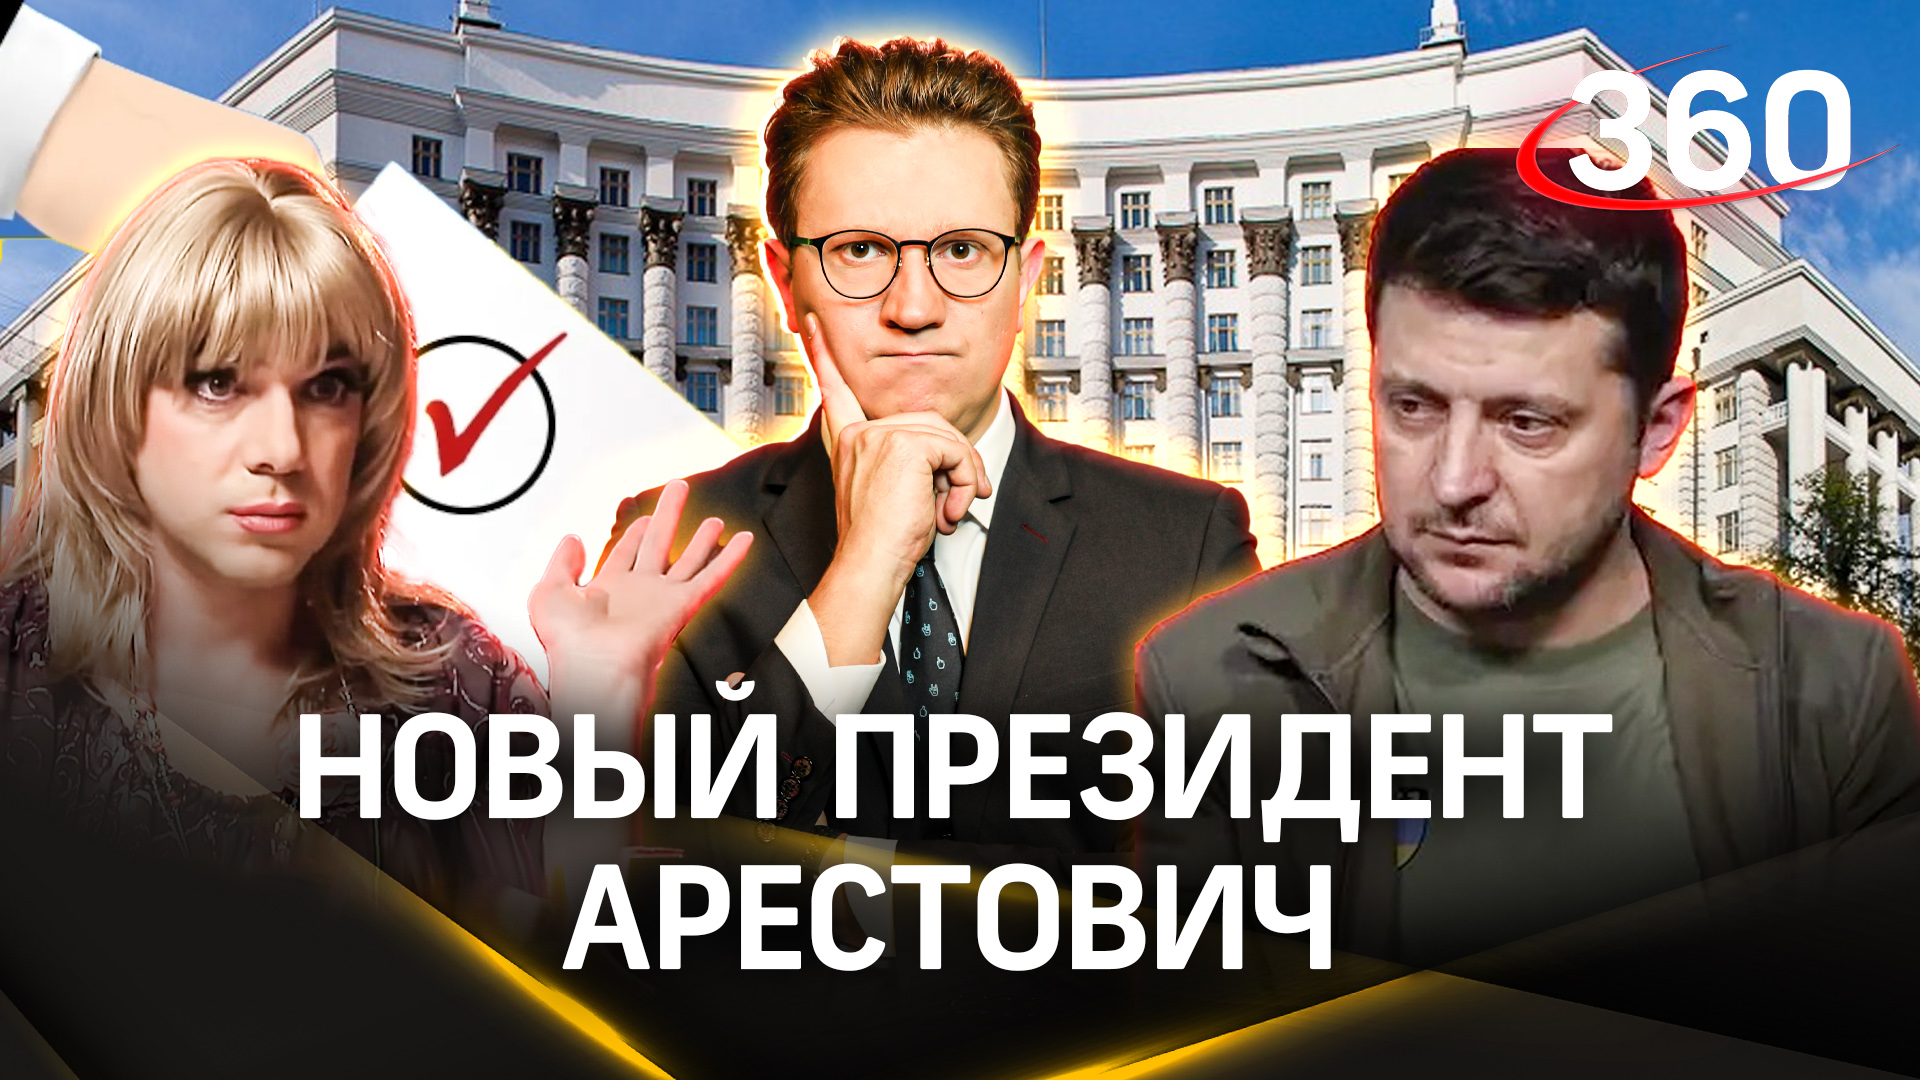 Алексей «Люся» Арестович может стать президентом Украины: «Россия пойдет на Киев»